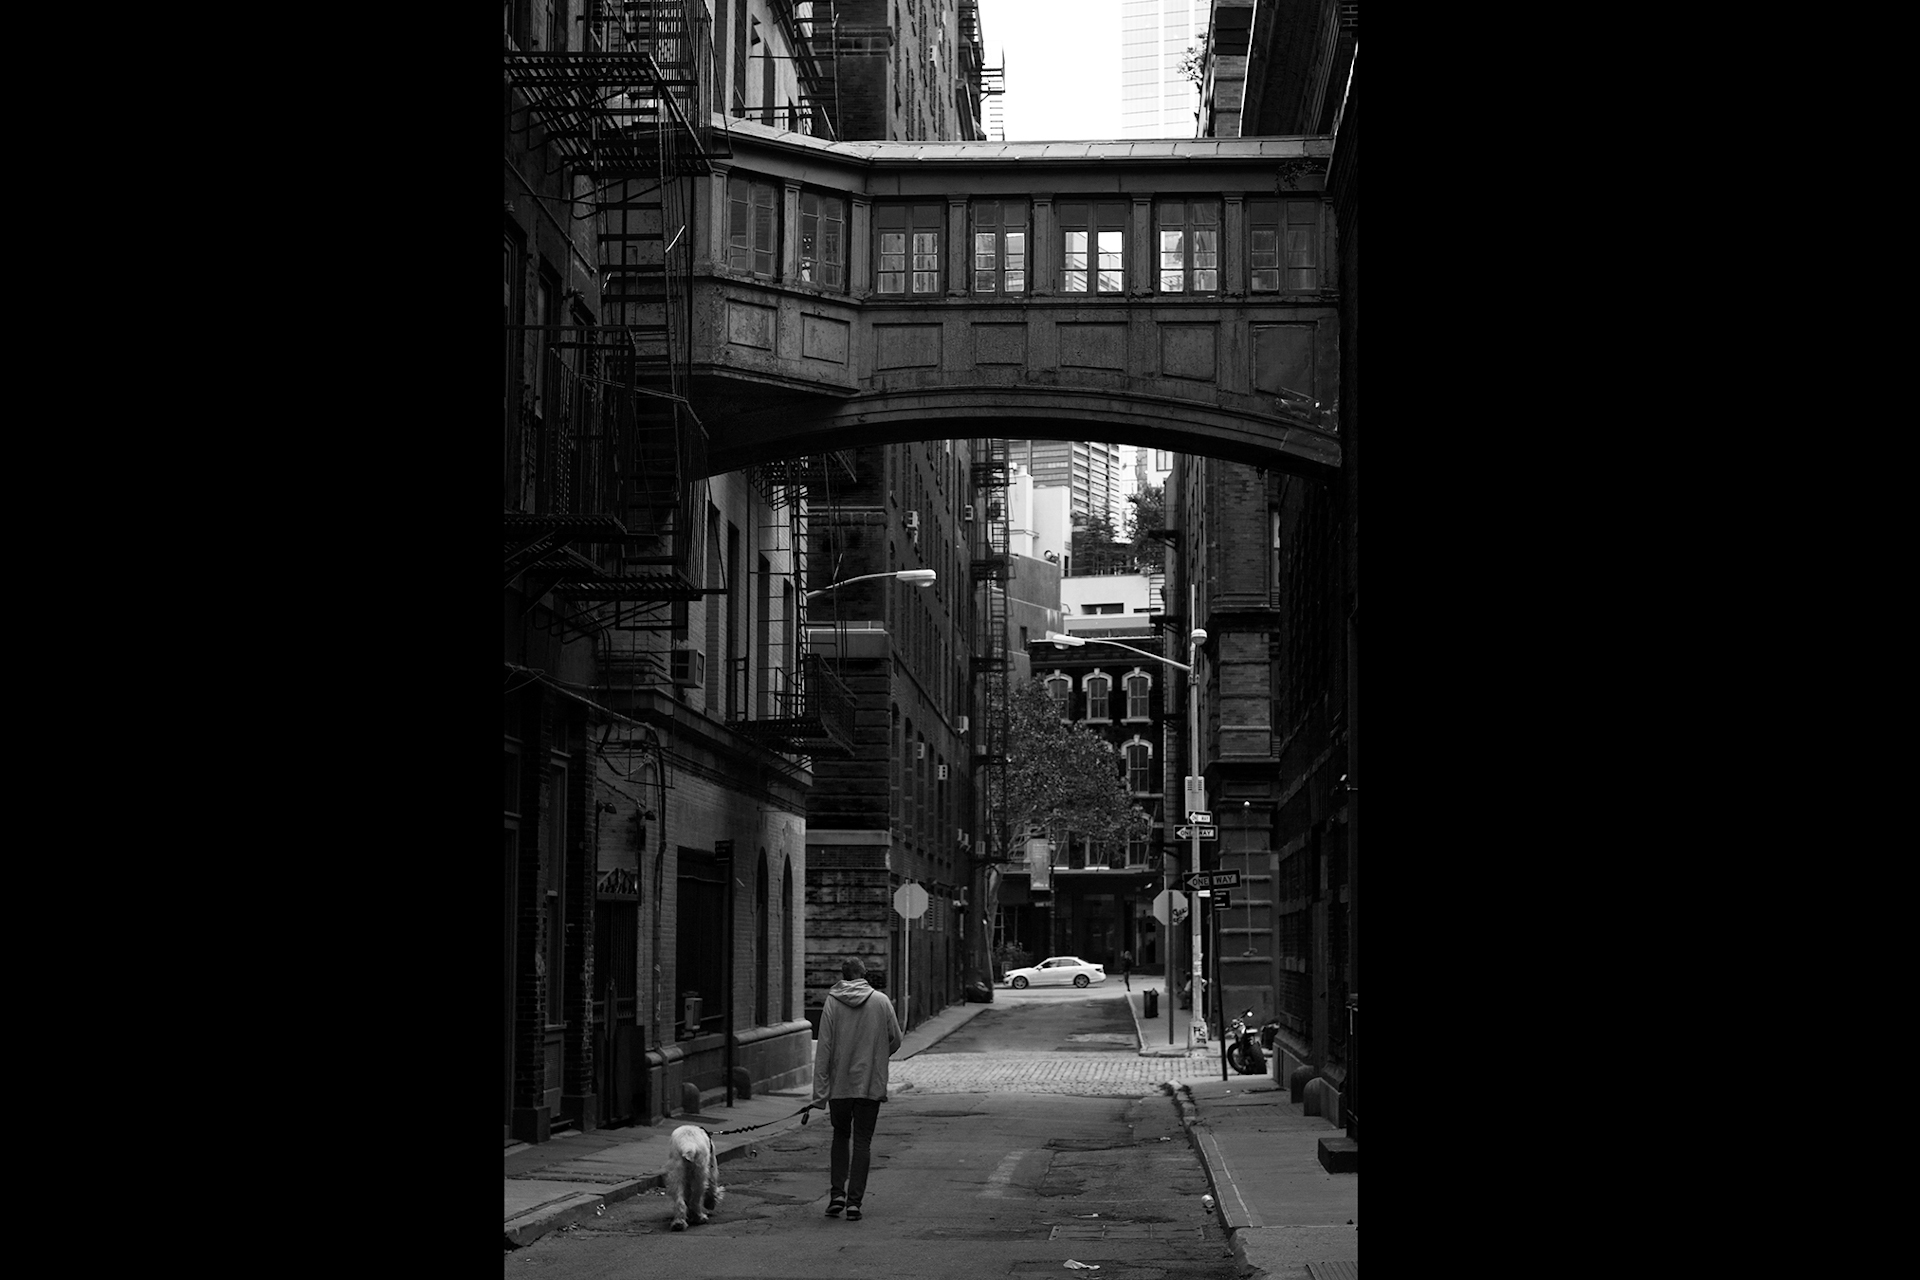 Man walking dog, NYC